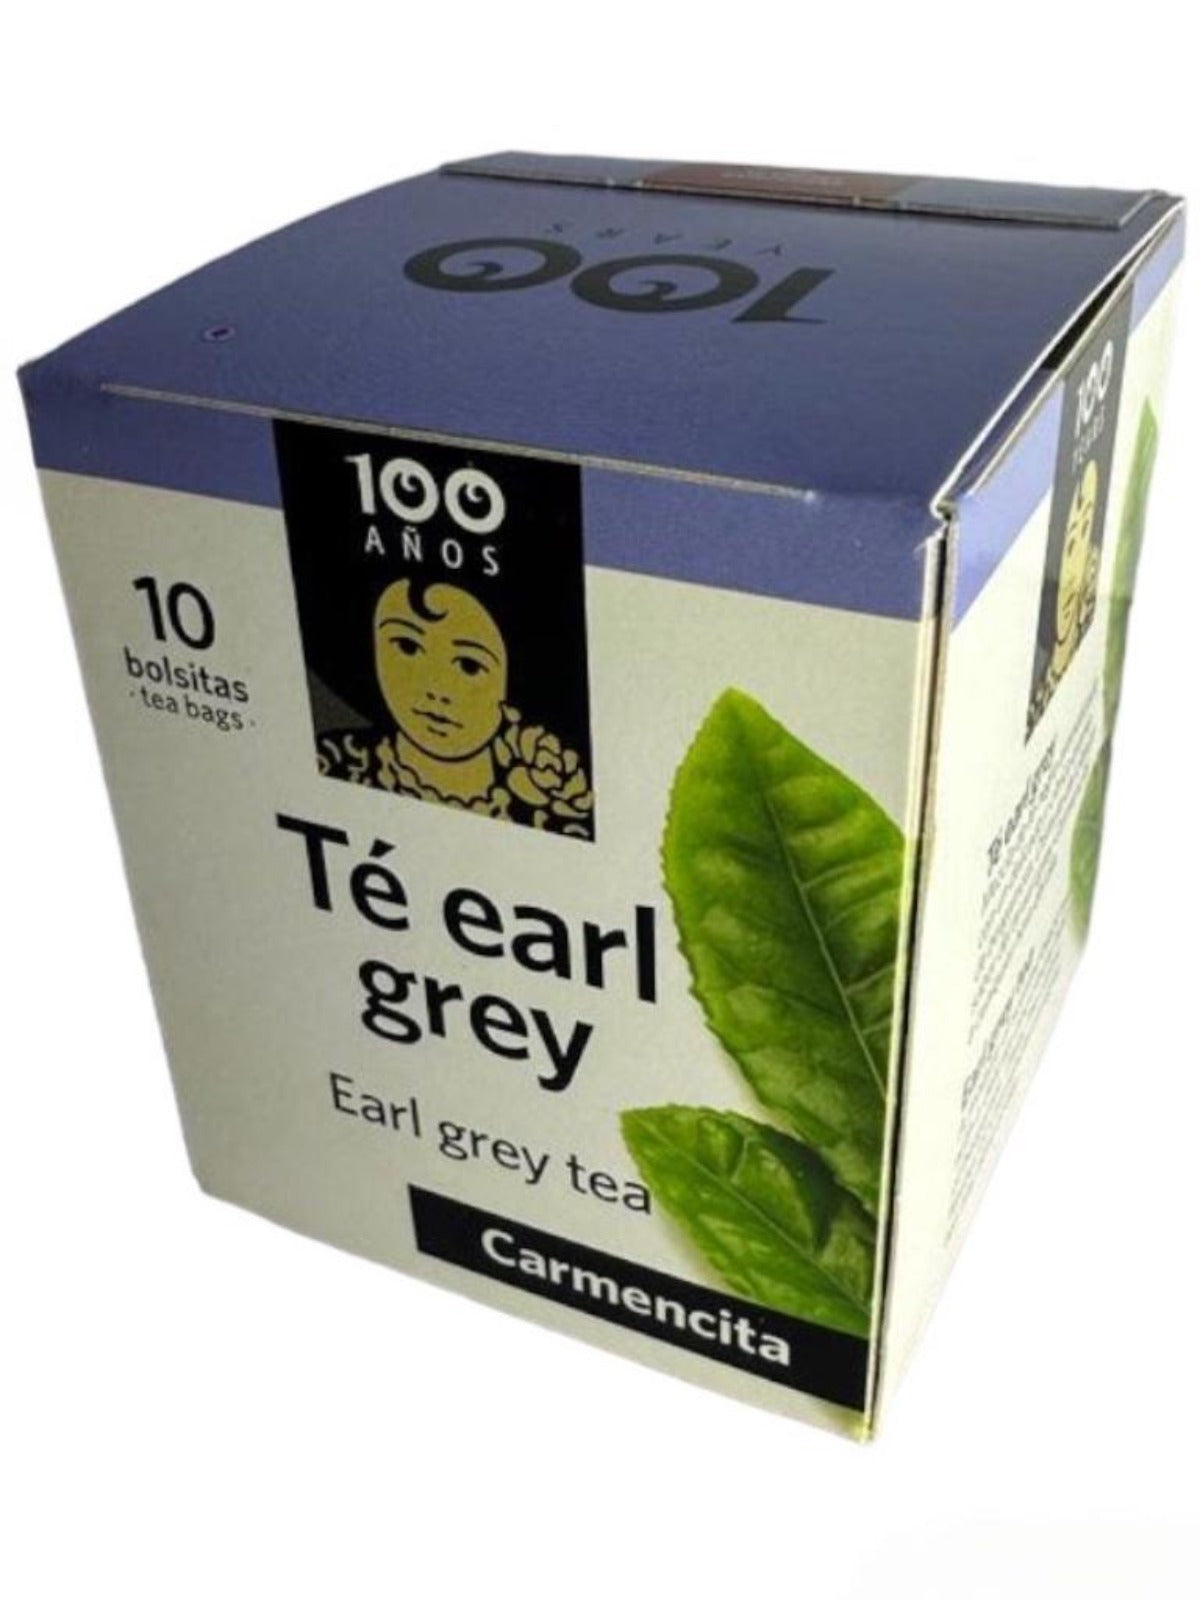 Carmencita Earl Grey Tea 10x bags 12g